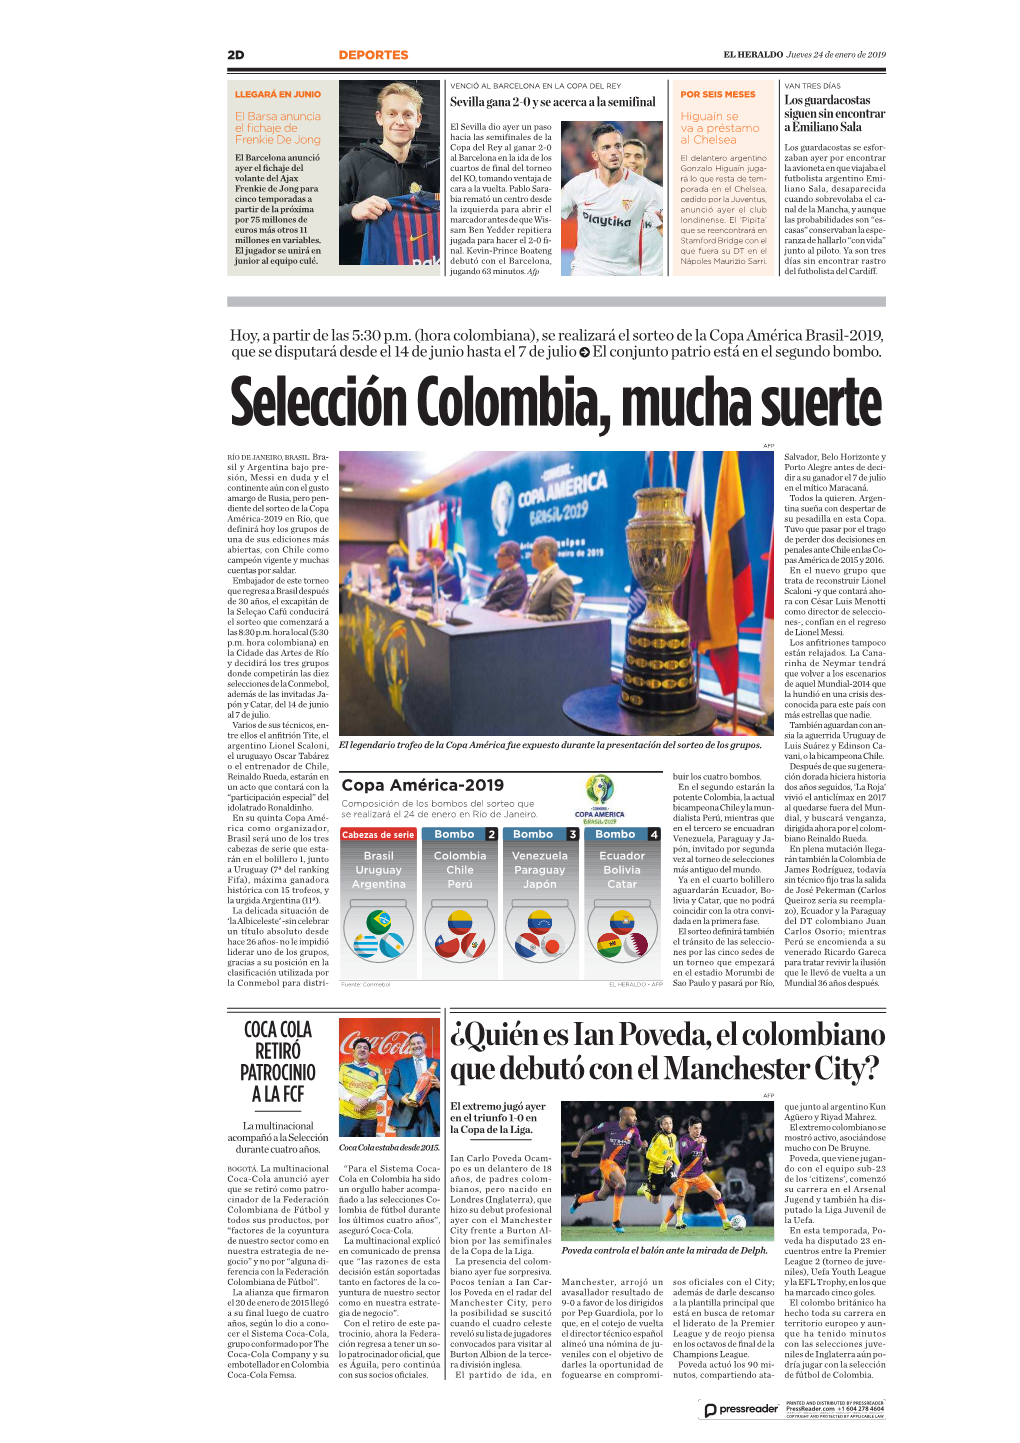 Selección Colombia, Mucha Suerte AFP RÍO DE JANEIRO, BRASIL